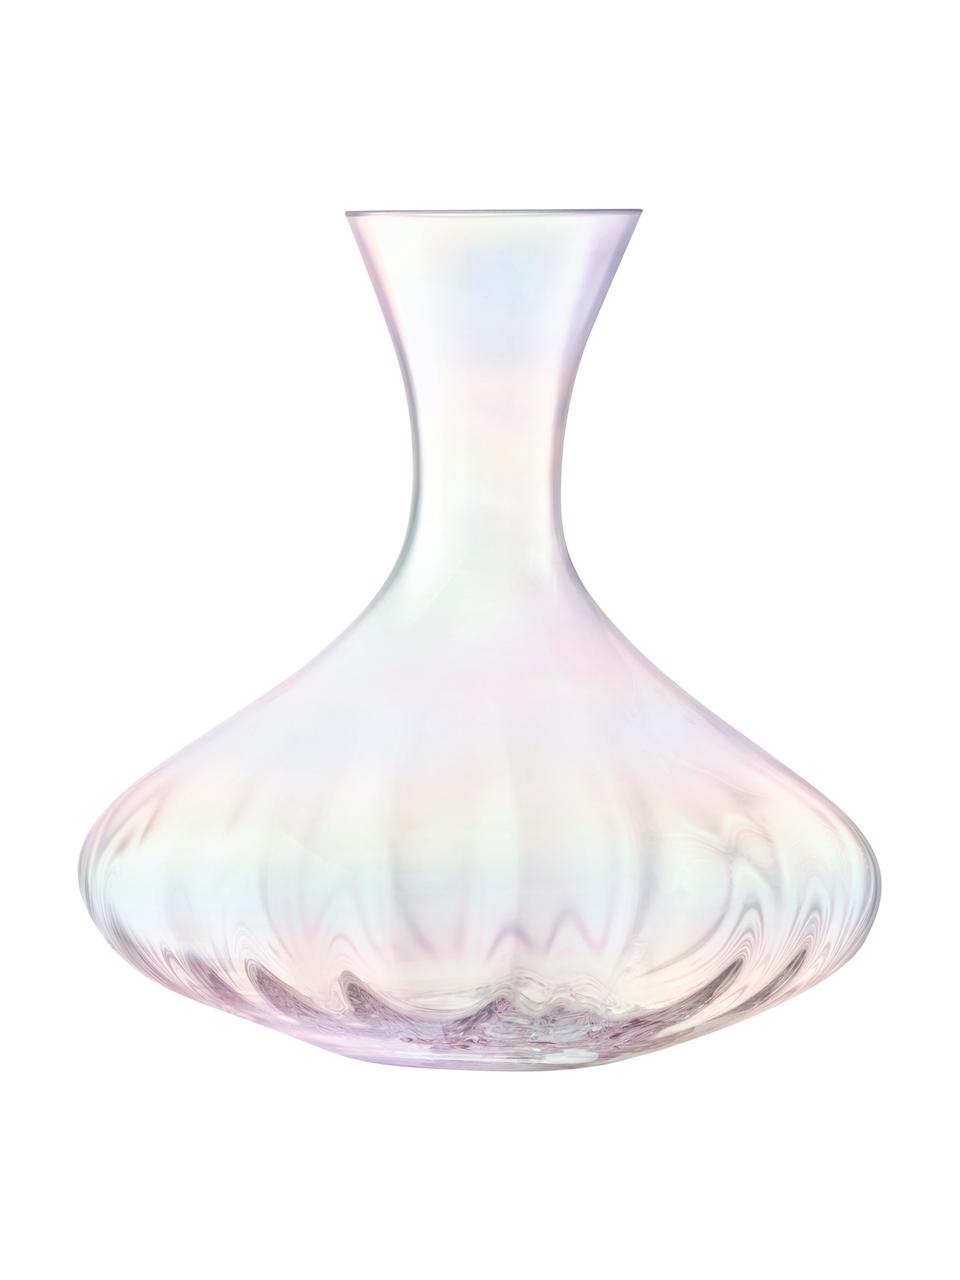 Mundgeblasener Dekanter Pearl mit schimmerndem Perlmuttglanz, 2.4 L, Glas, Perlmutt-Schimmer, H 23 cm